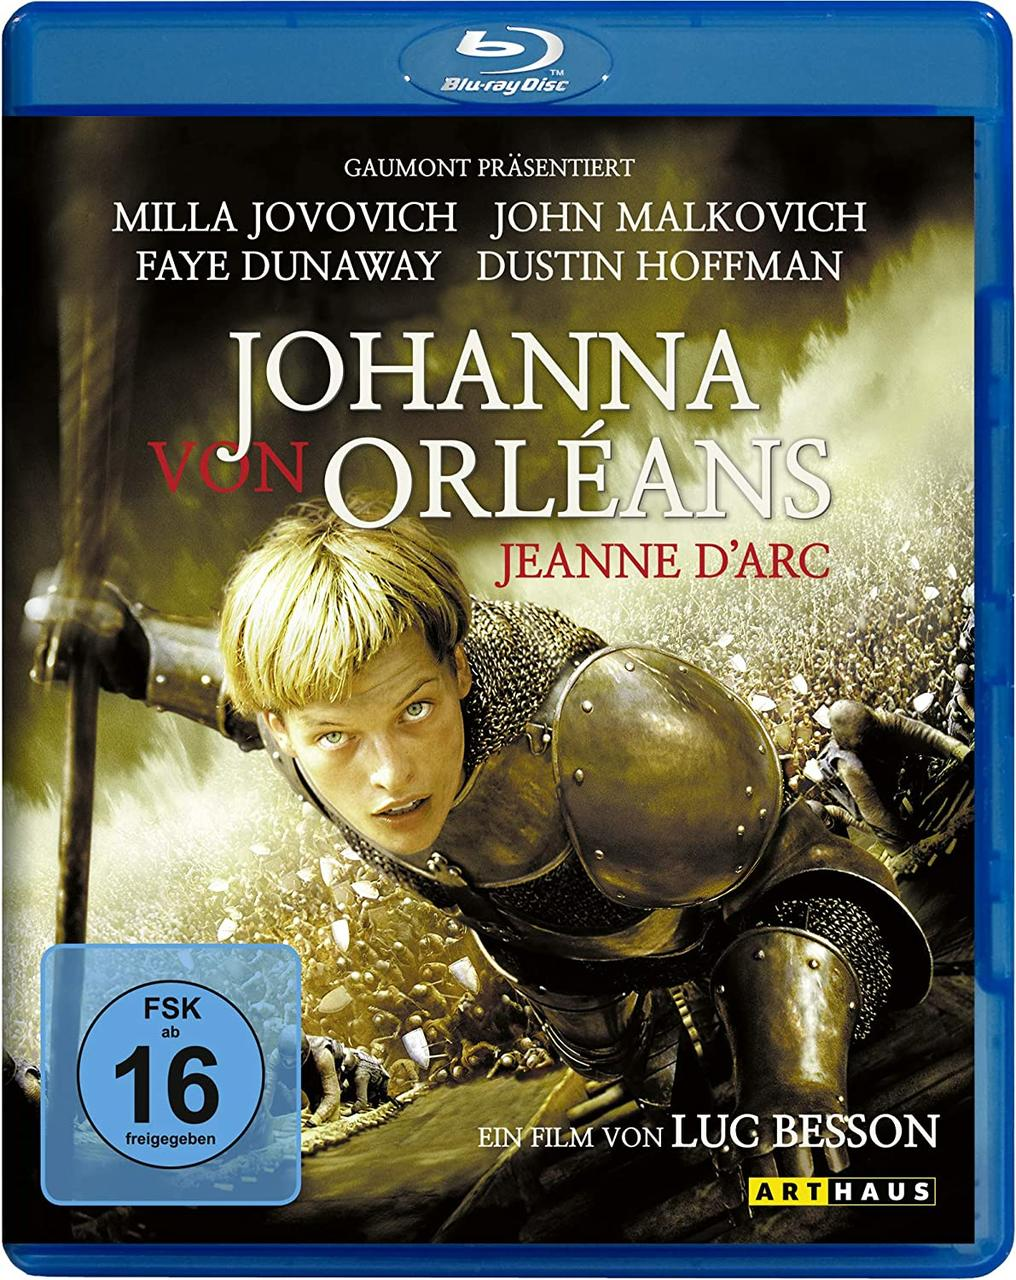 Von Blu-ray Orleans Johanna